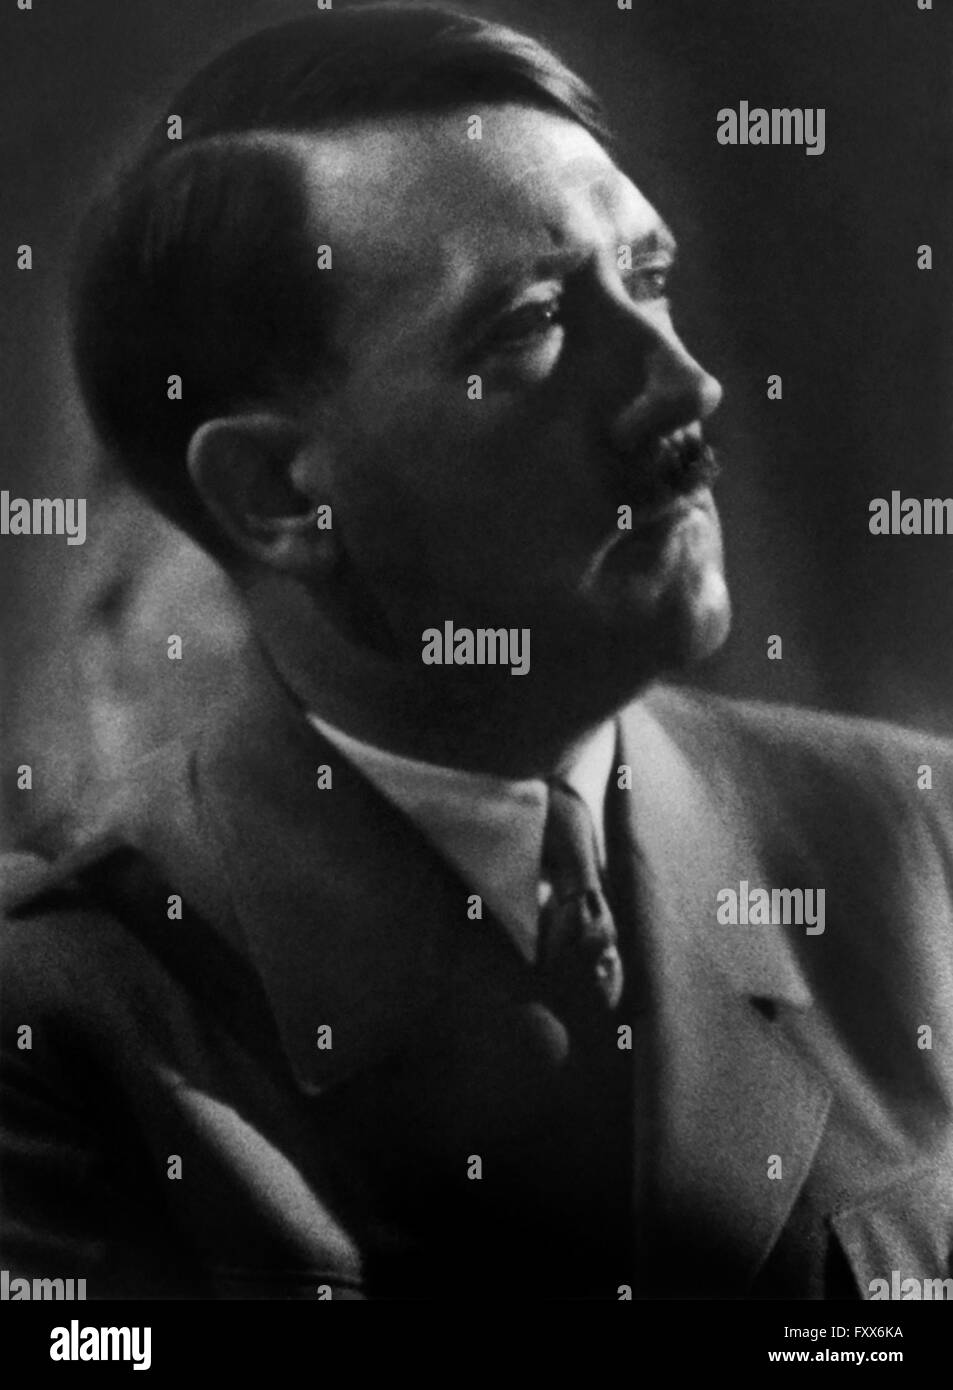 Adolph Hitler (1889-1945) war der Führer des nationalsozialistischen Deutschlands von 1934 bis 1945, der Initiator des zweiten Weltkriegs und der einflussreichsten Stimme in der Folter und Hinrichtung von Millionen im Holocaust. Stockfoto